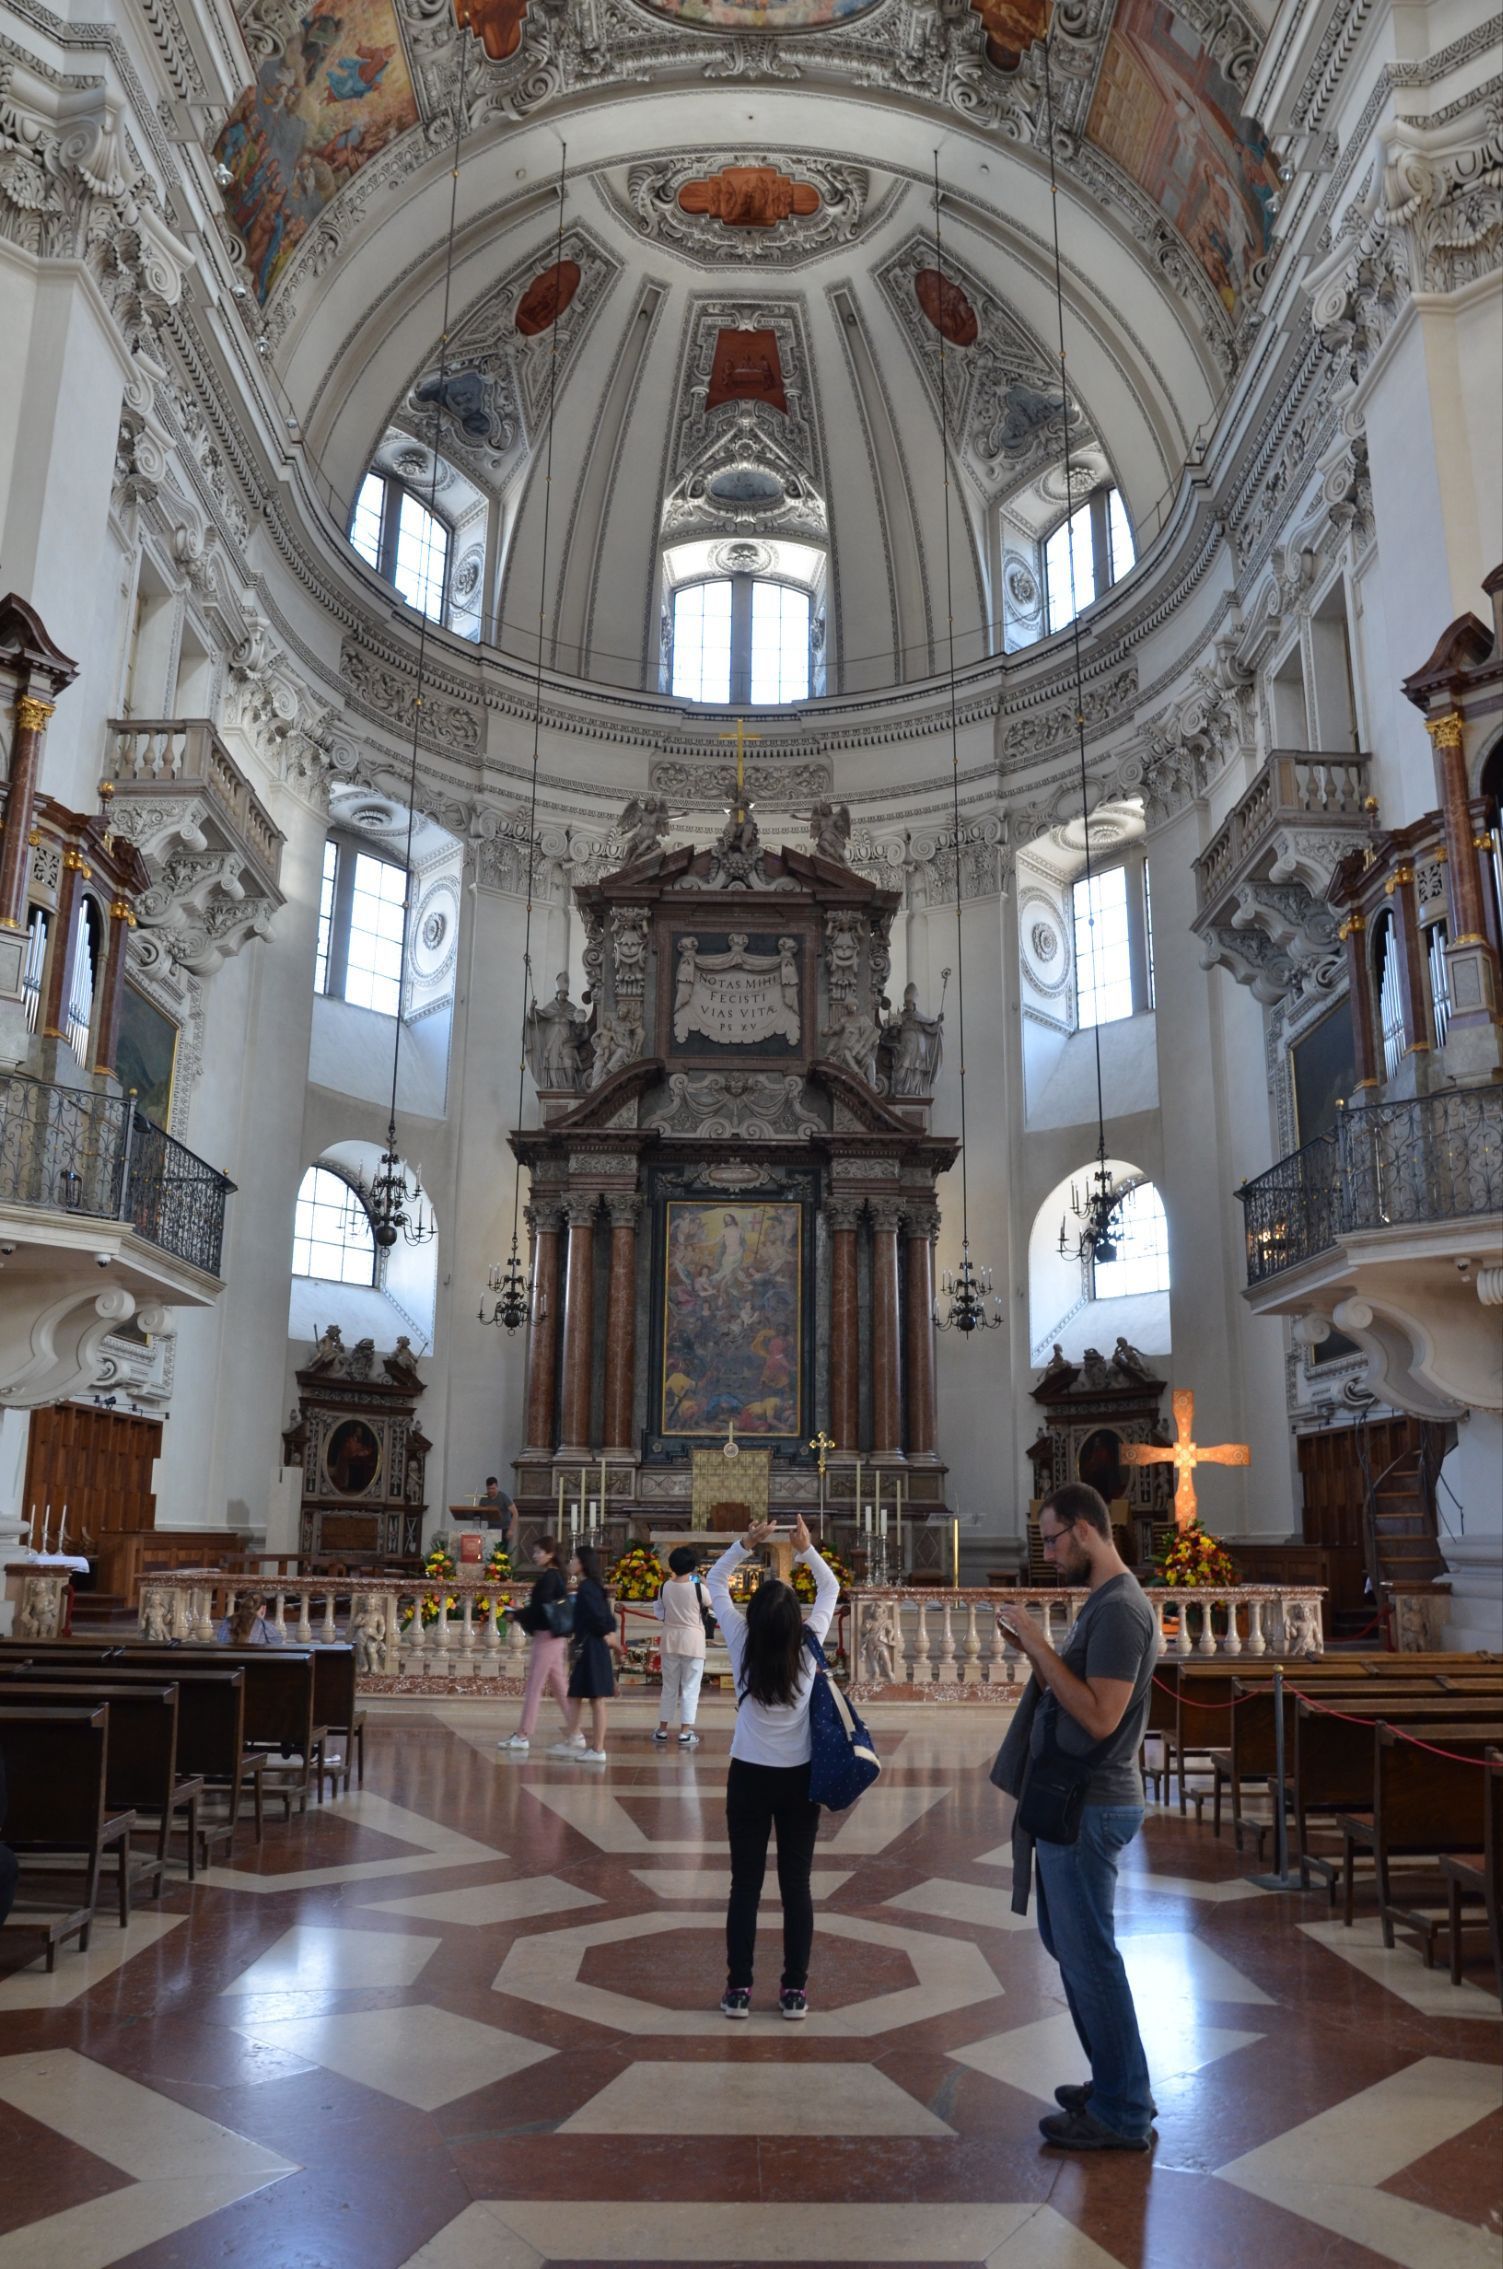 ザルツブルグ大聖堂 ザルツブルク の旅行レビュー Trip Comトラベルガイド